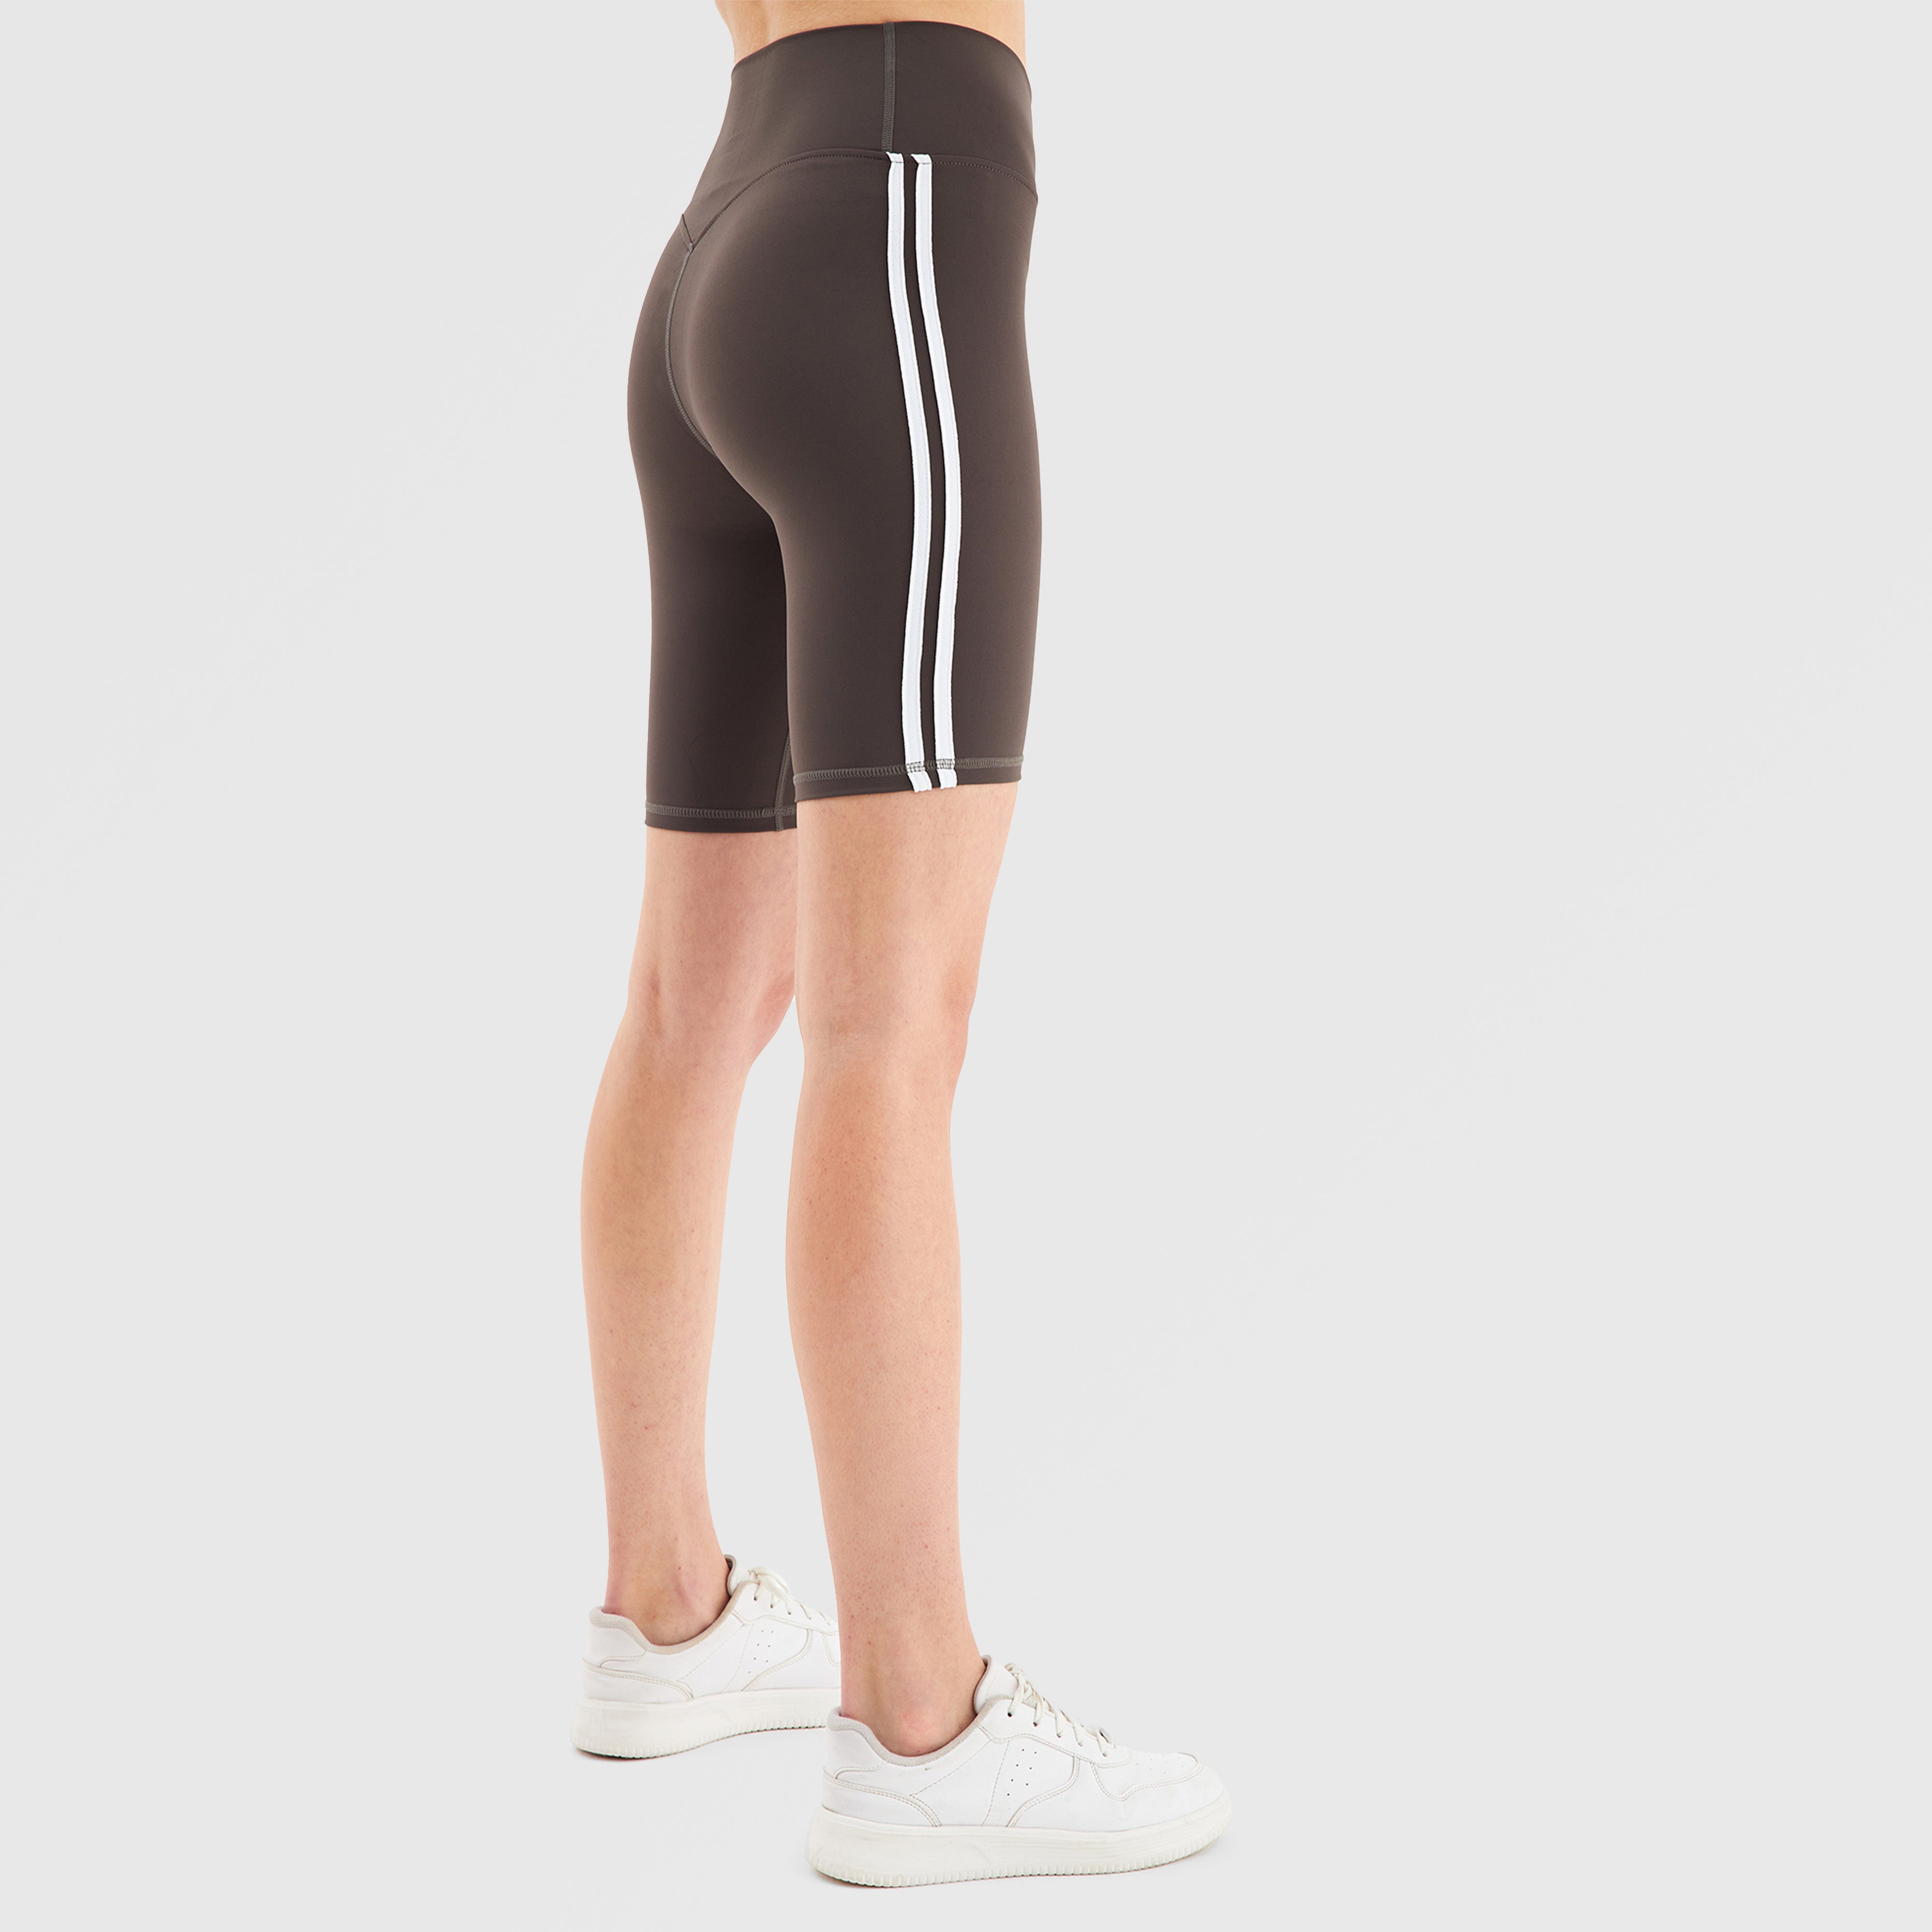 GA Aerobic Shorts (Charcoal)